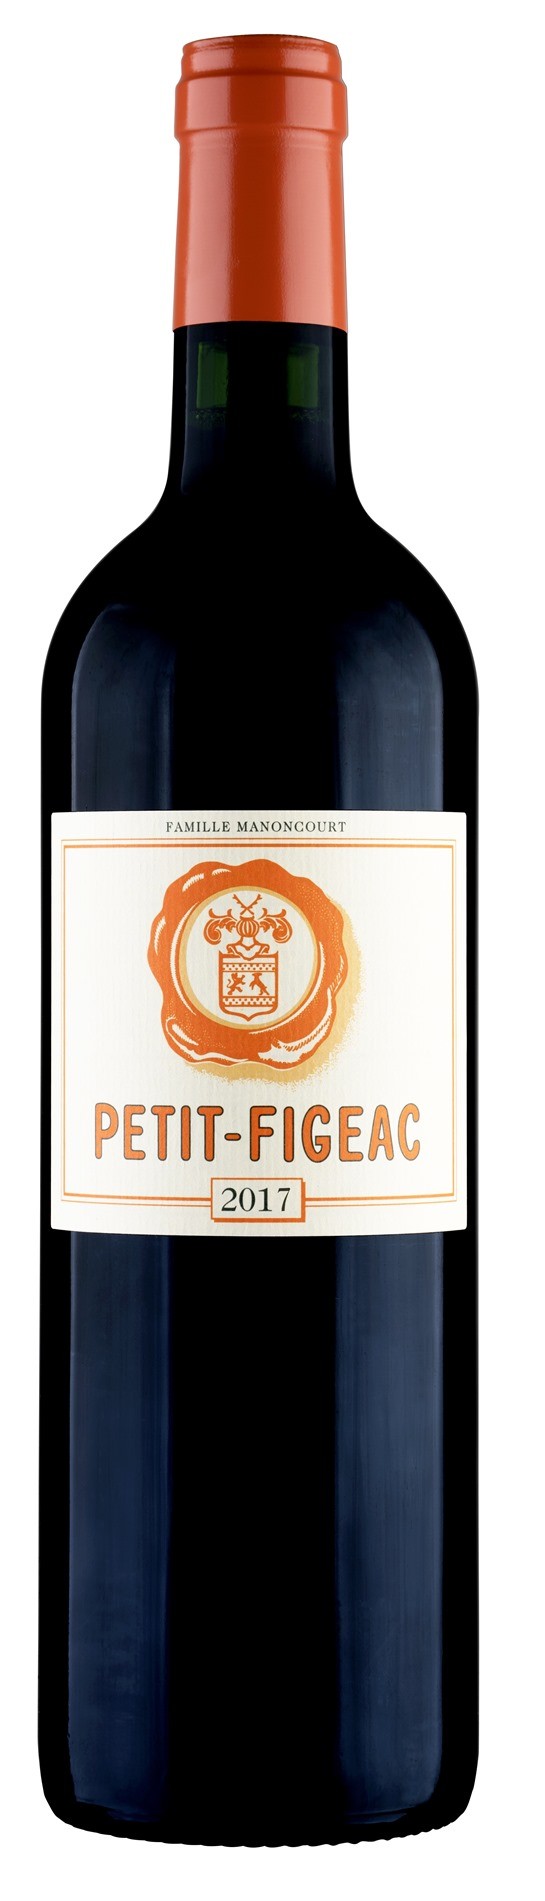 Petit Figeac 2017, 1,5l Magnum, Saint Emilion